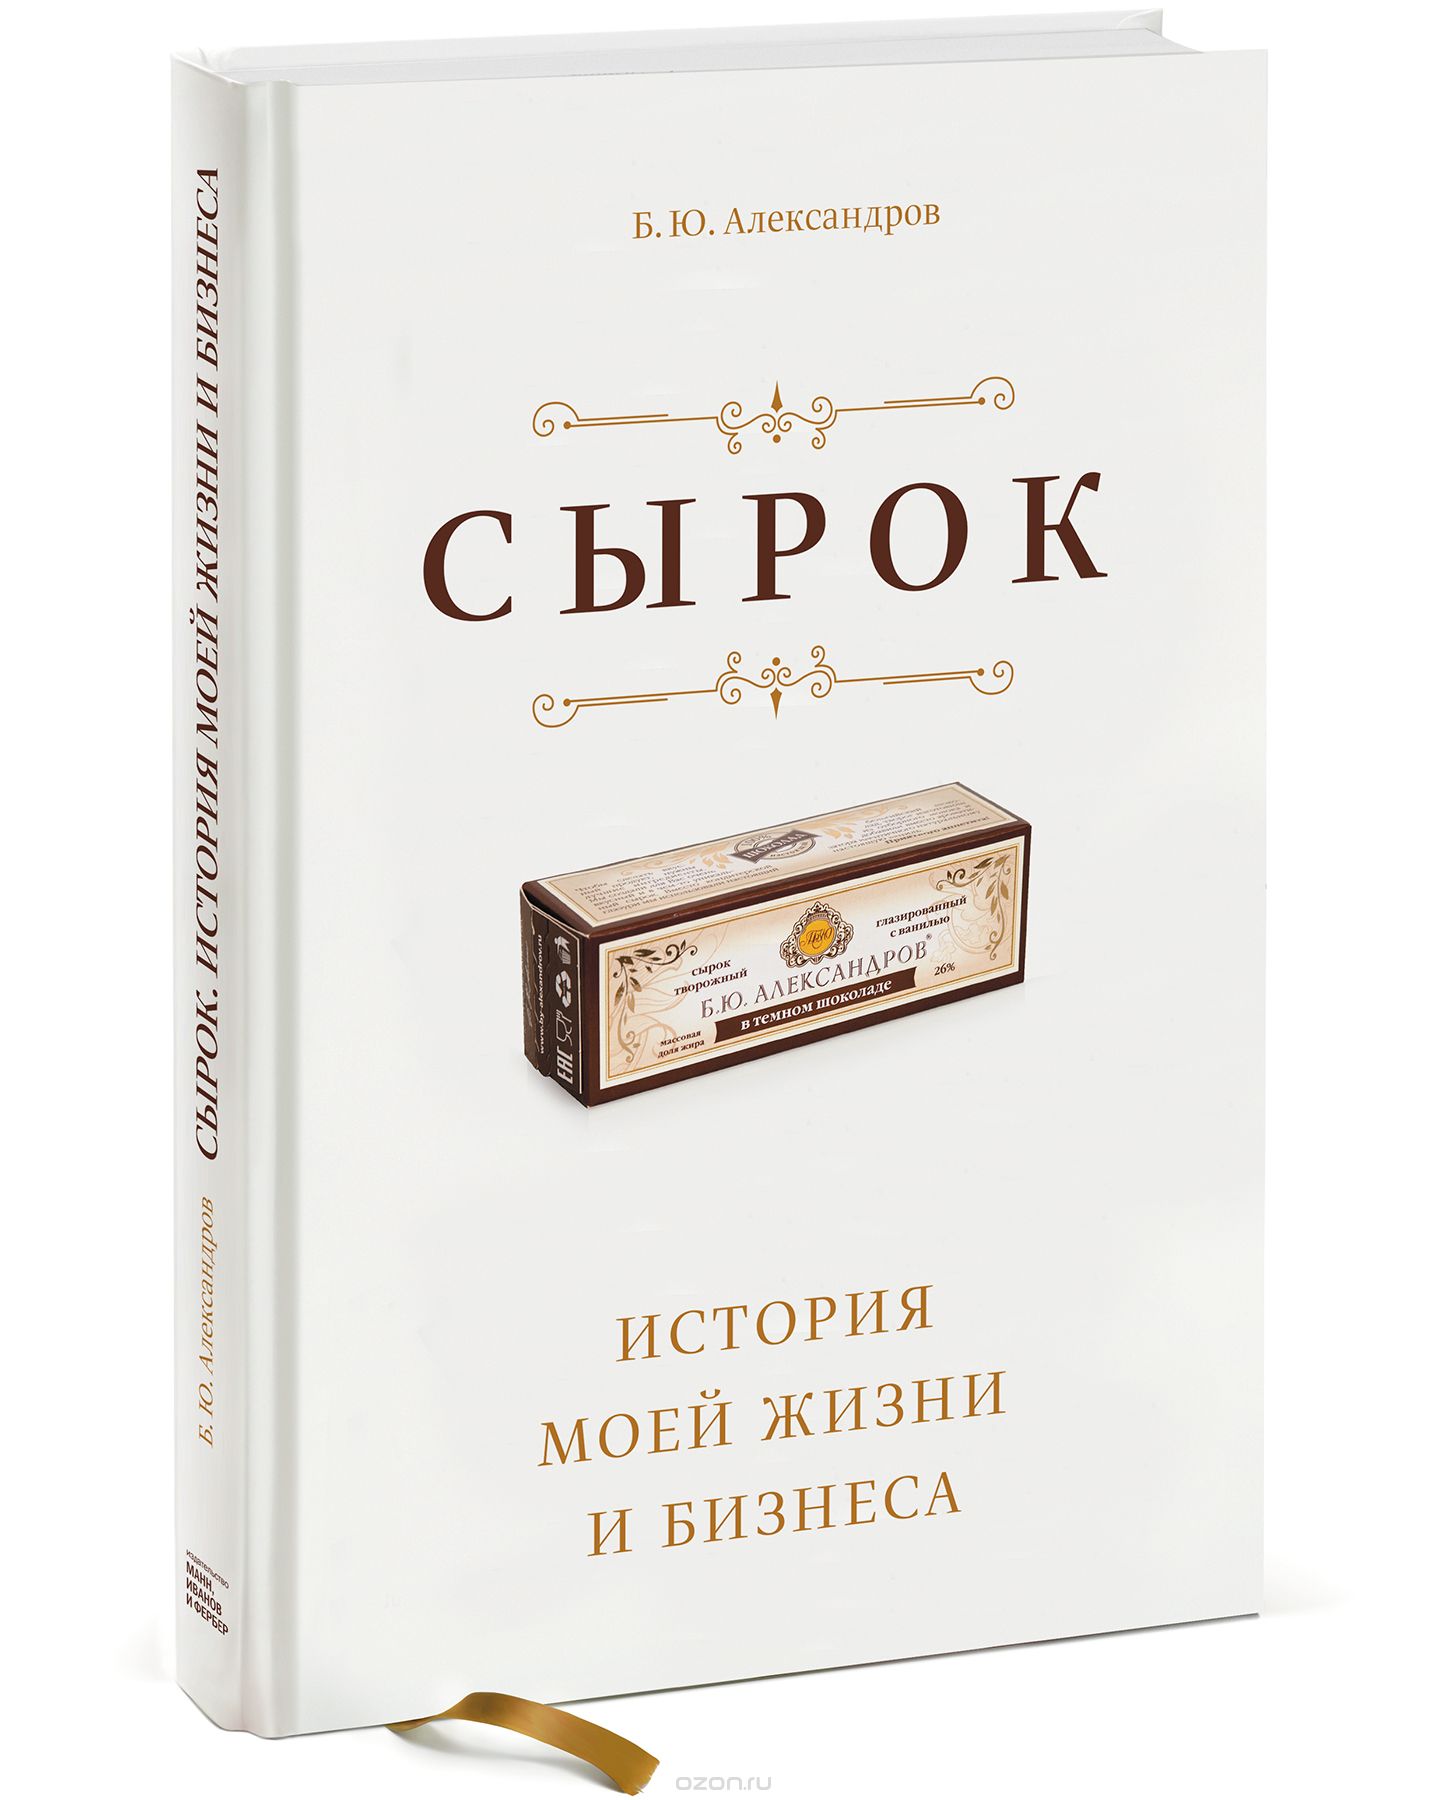 Скачать книгу "Сырок. История моей жизни и бизнеса, Б. Ю. Александров"